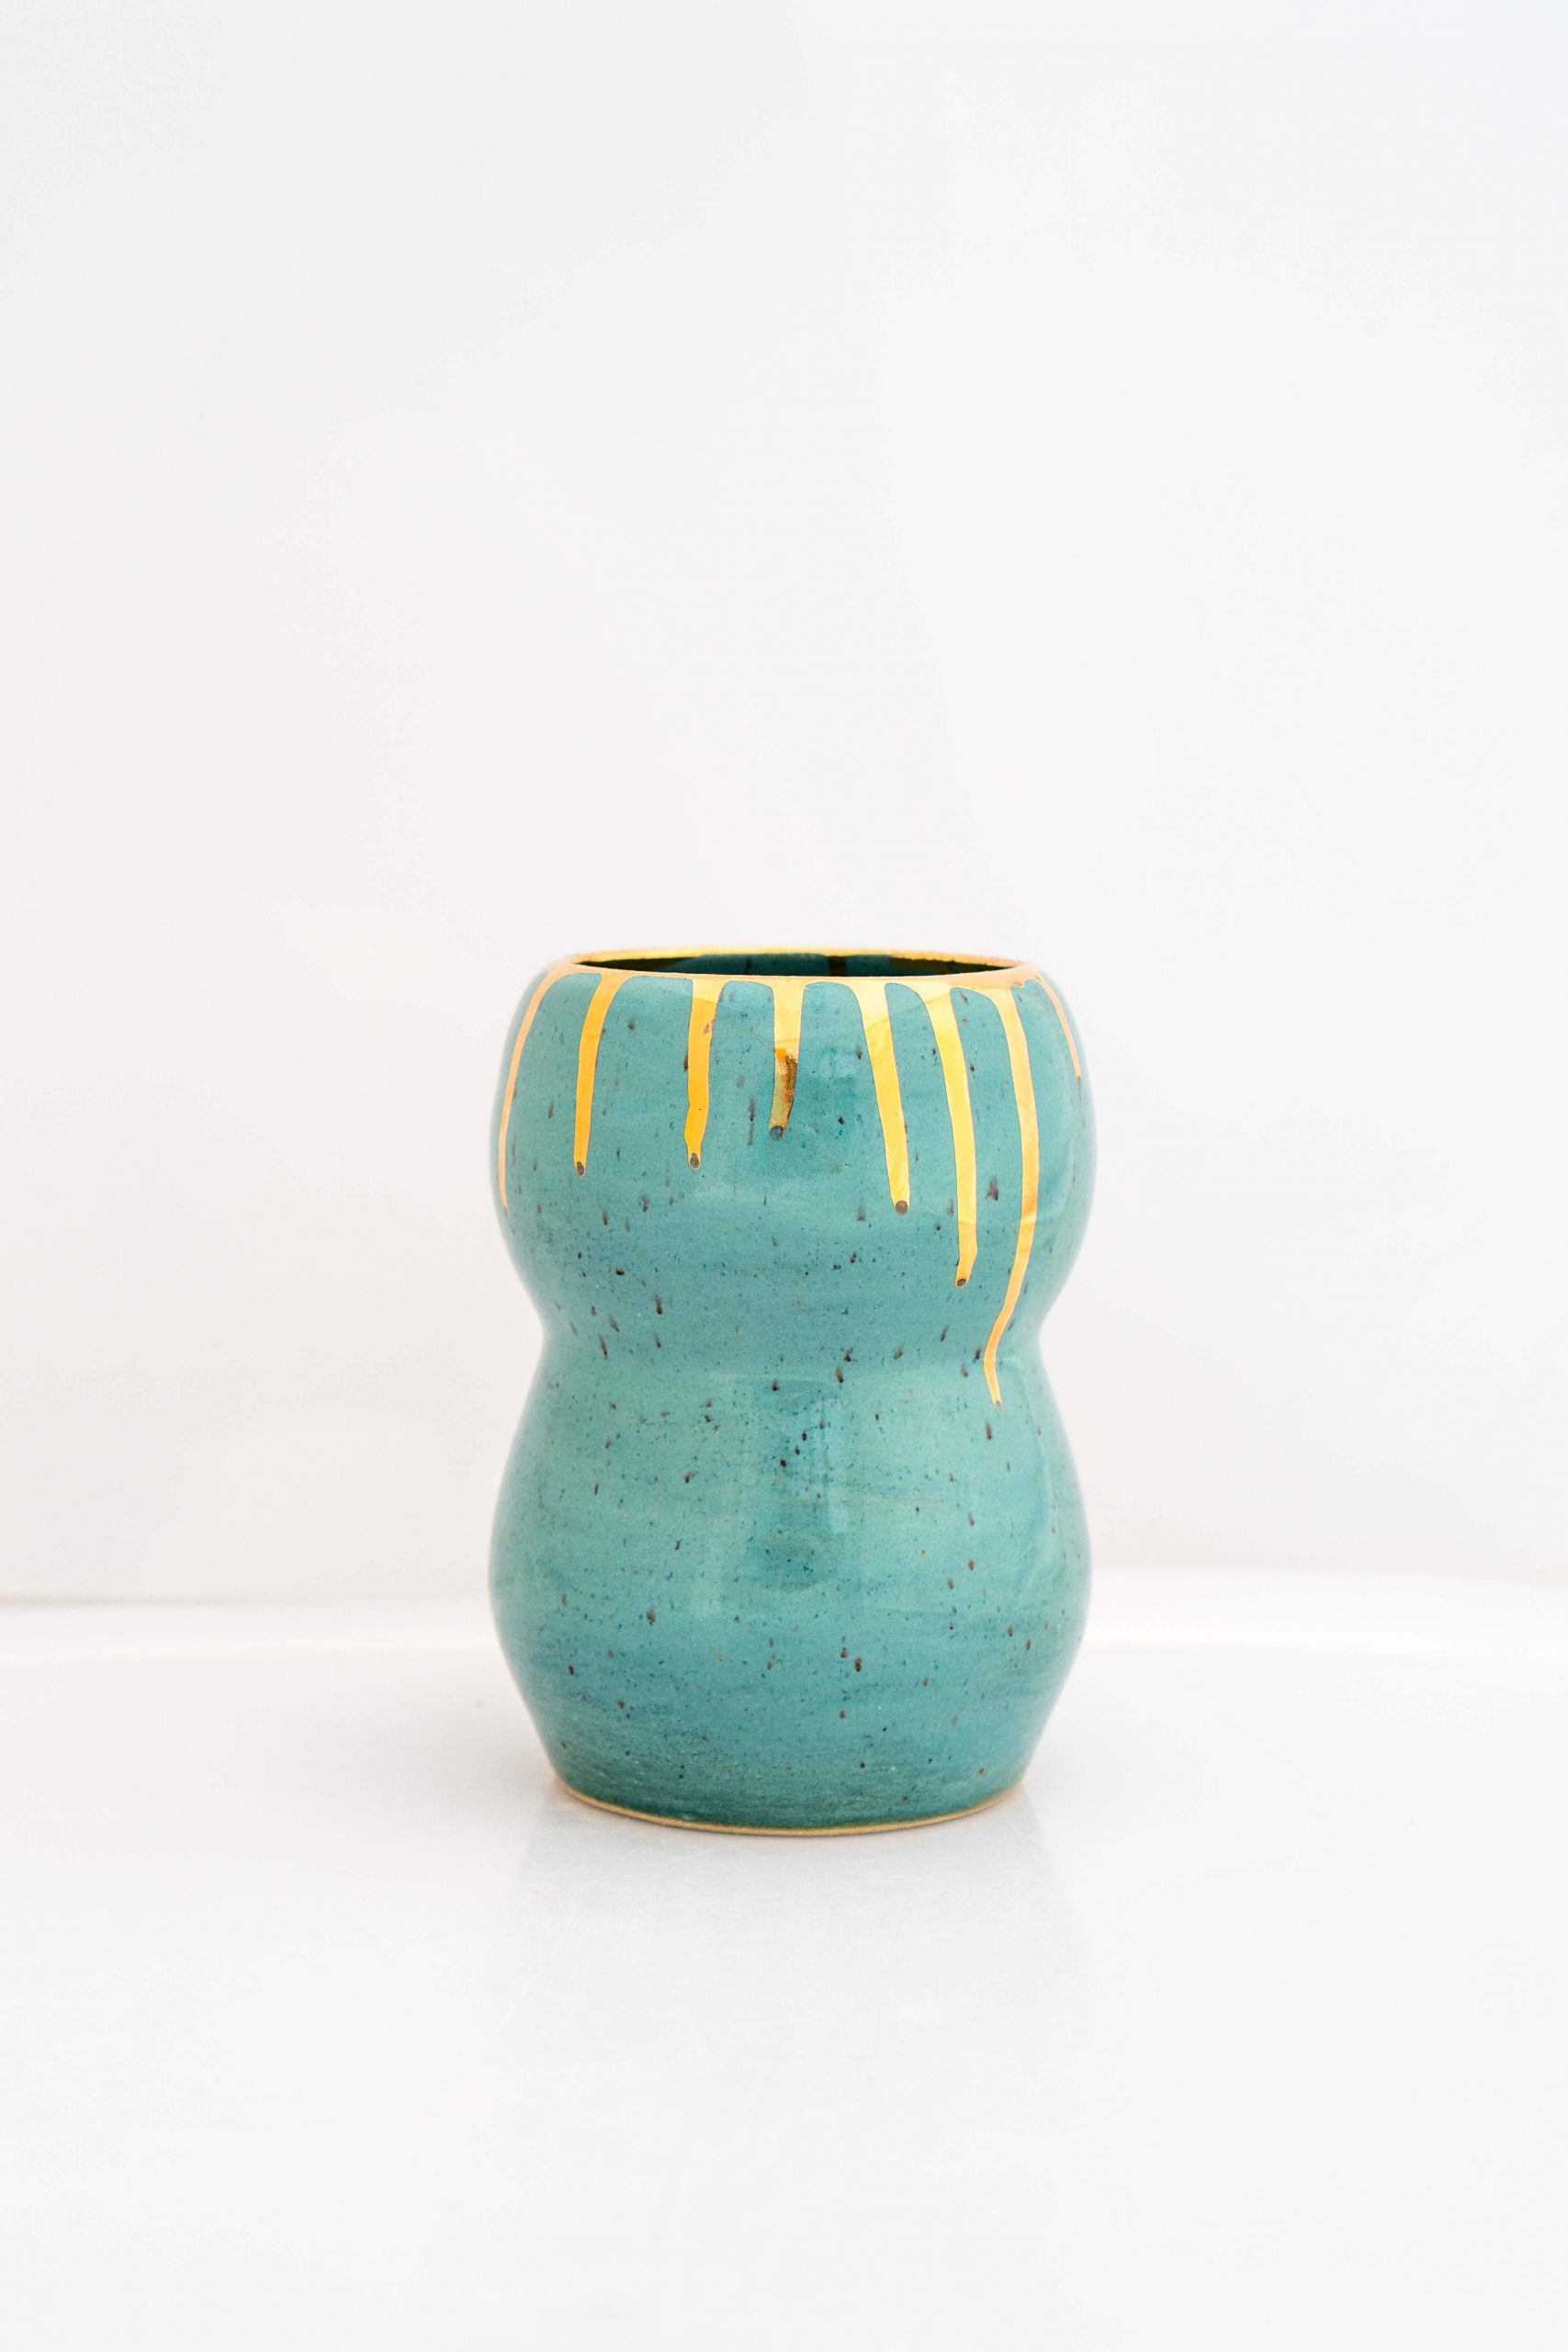 Ceramic Vase - Gold+ Turquoise Glazed